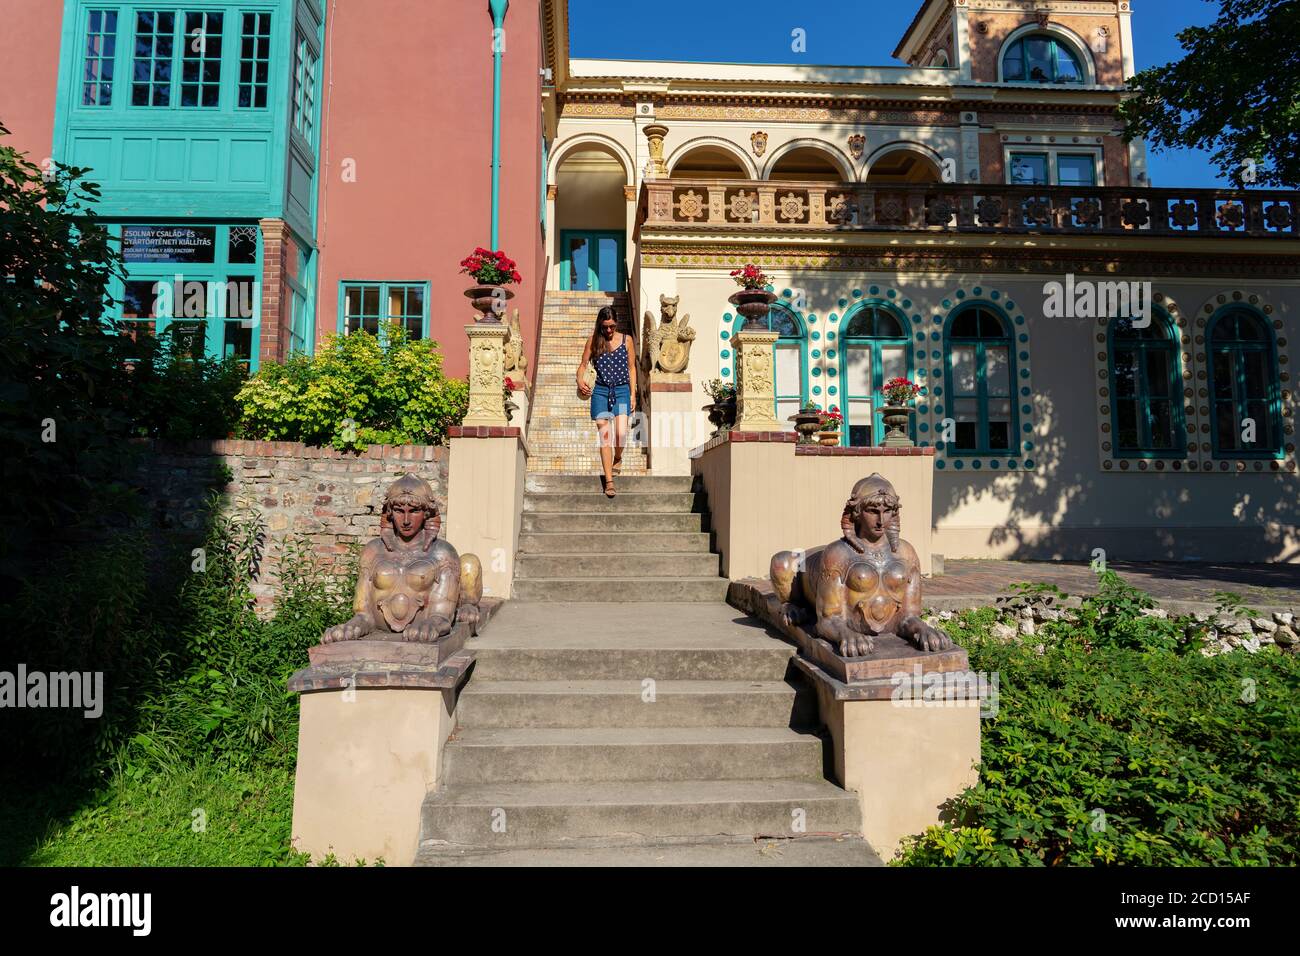 Pecs, Hongrie - 21.08.2020: Magnifique bâtiment coloré dans le célèbre quartier coloré de Zsolnay à Pécs avec une femme de toursit Banque D'Images